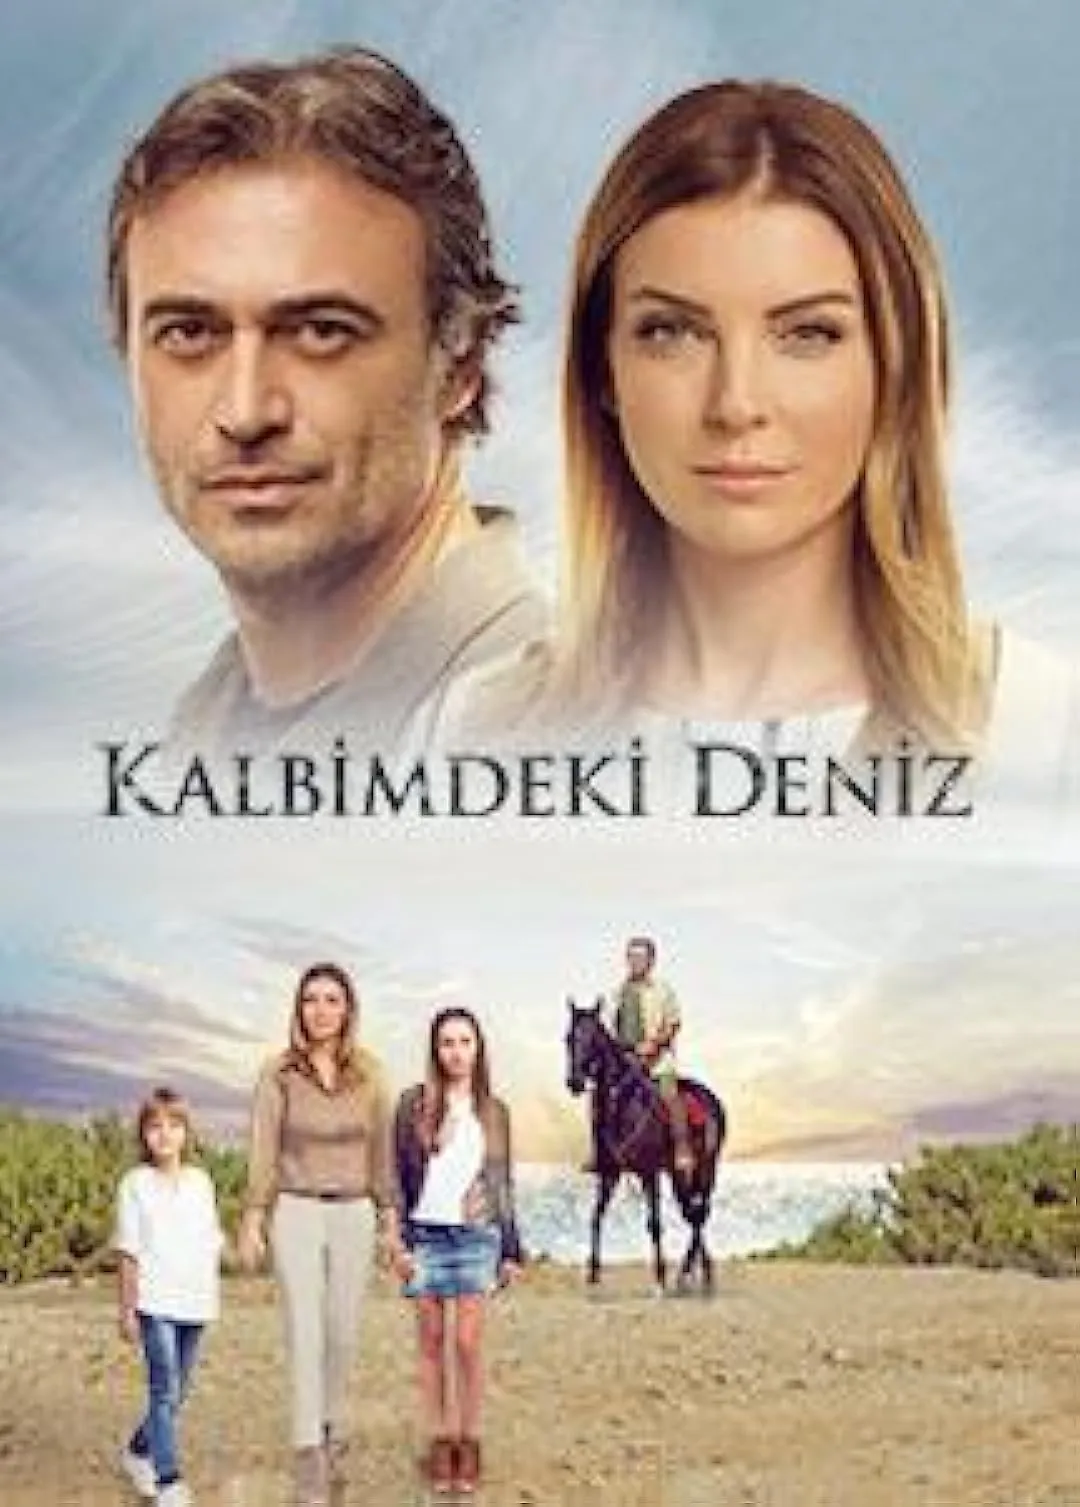 Kalbimdeki Deniz | A doua șansă online subtitrat in romana